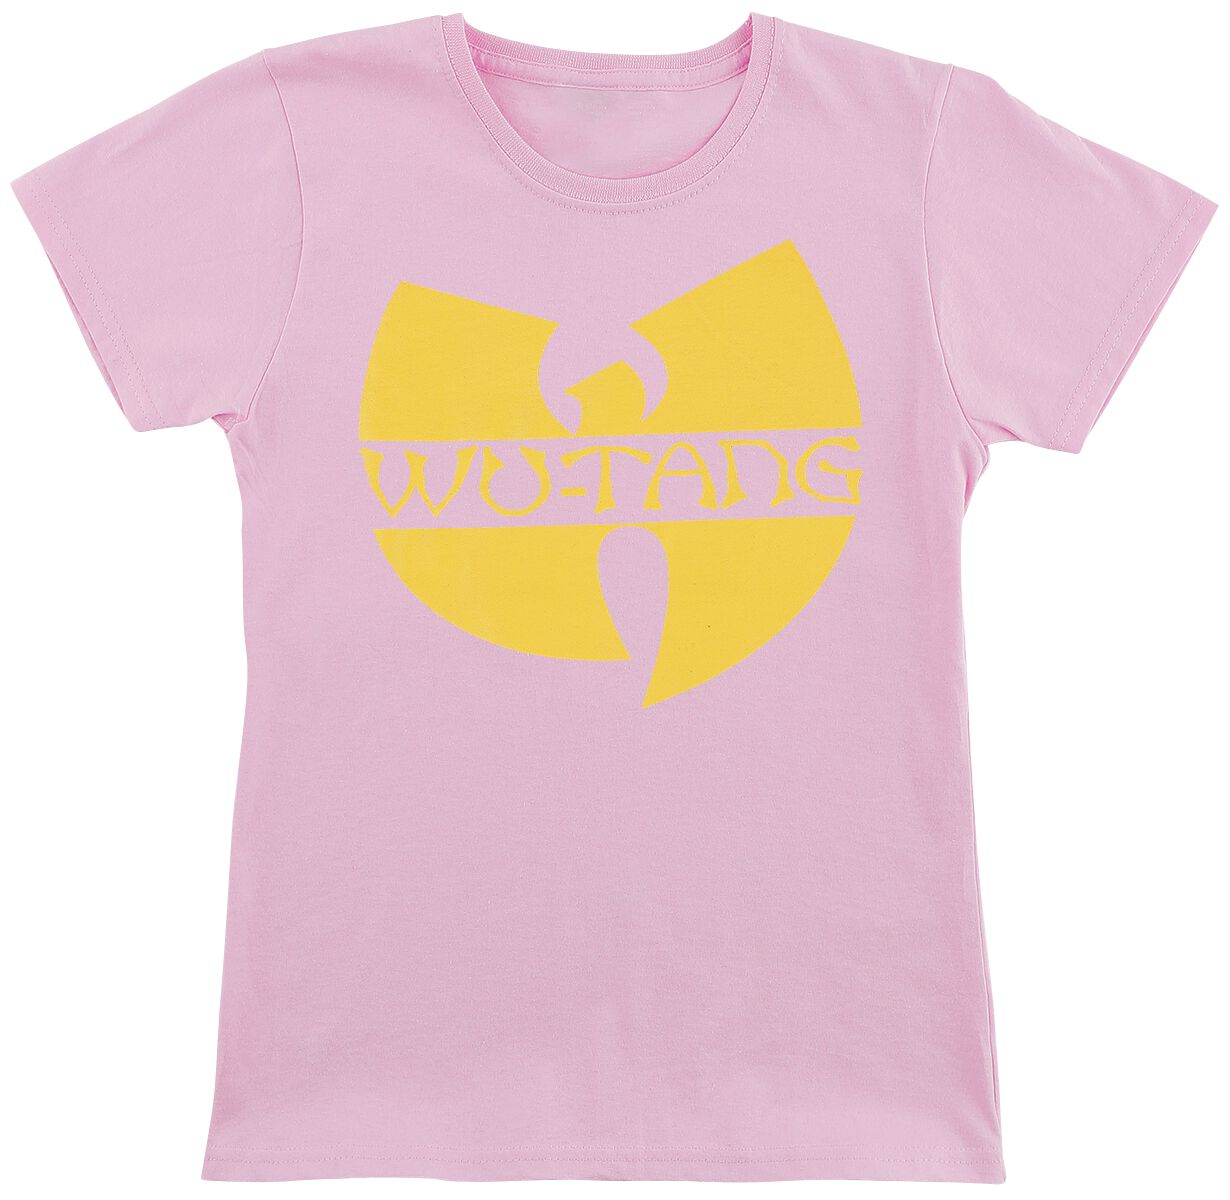 Wu-Tang Clan T-Shirt für Kinder - Kids - Logo - für Mädchen & Jungen - pink  - Lizenziertes Merchandise!